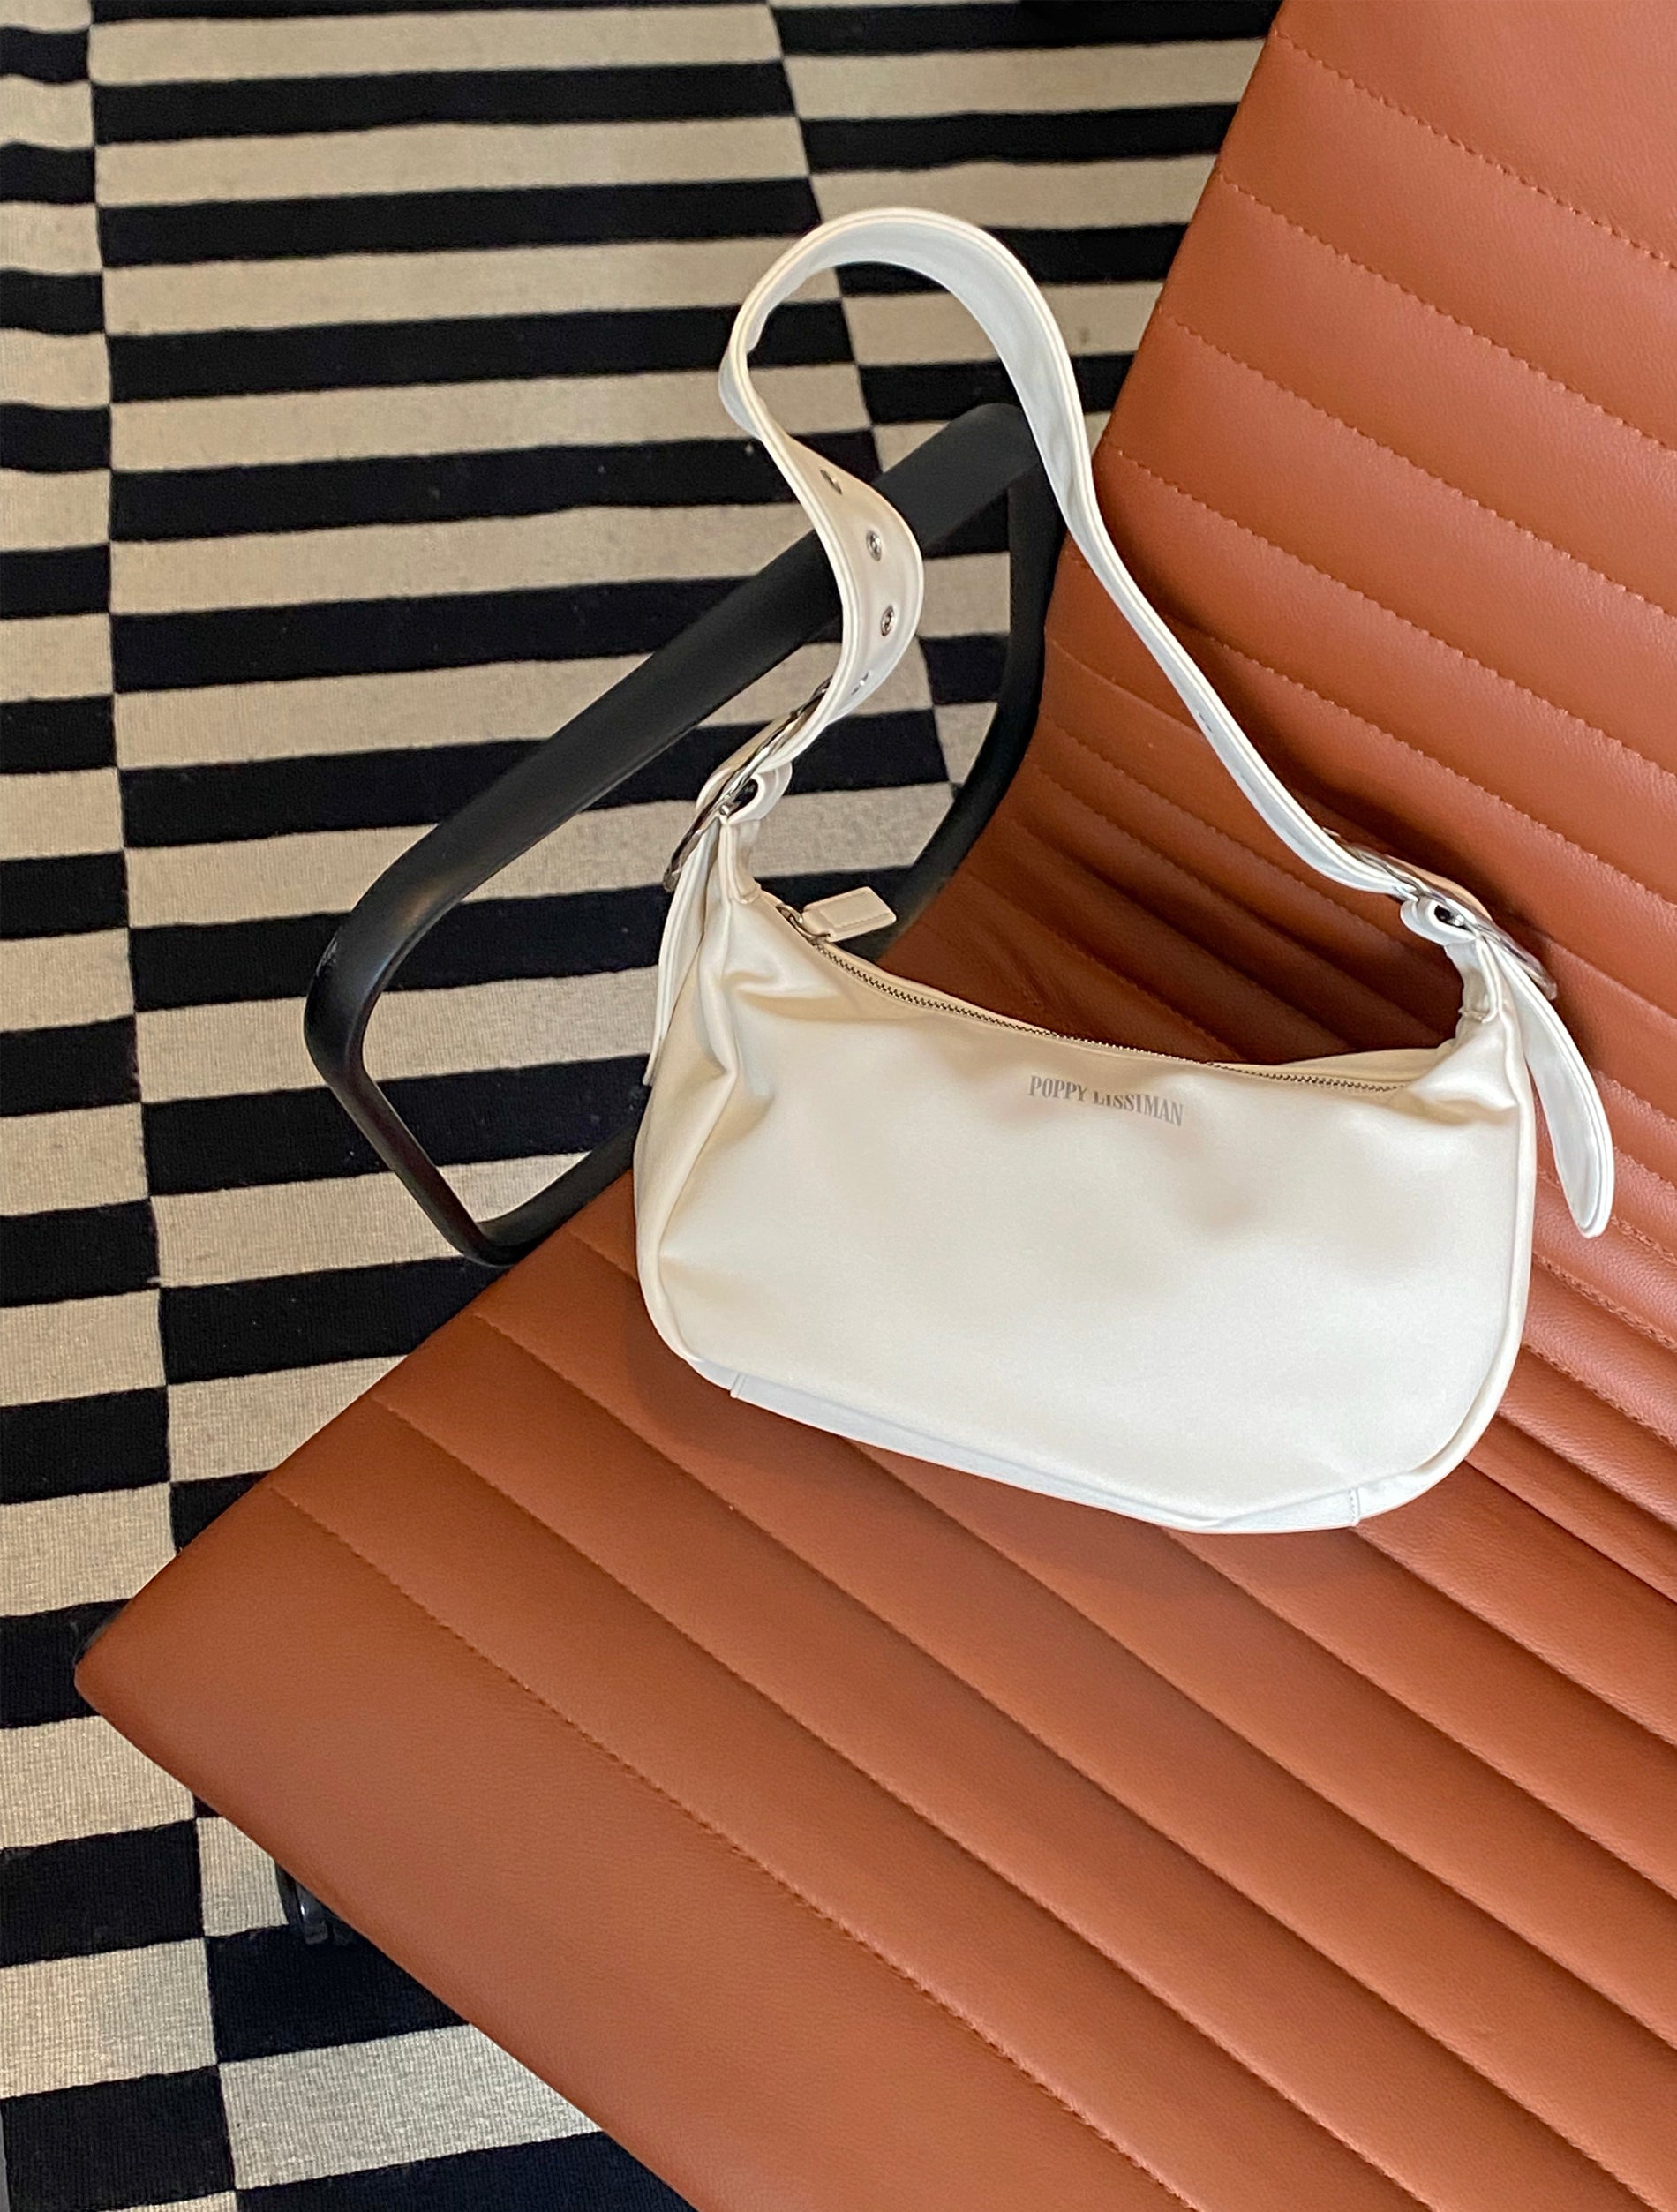 Pin by Tay on Bags | Luxury bags, Fashion bags, Bottega veneta bag